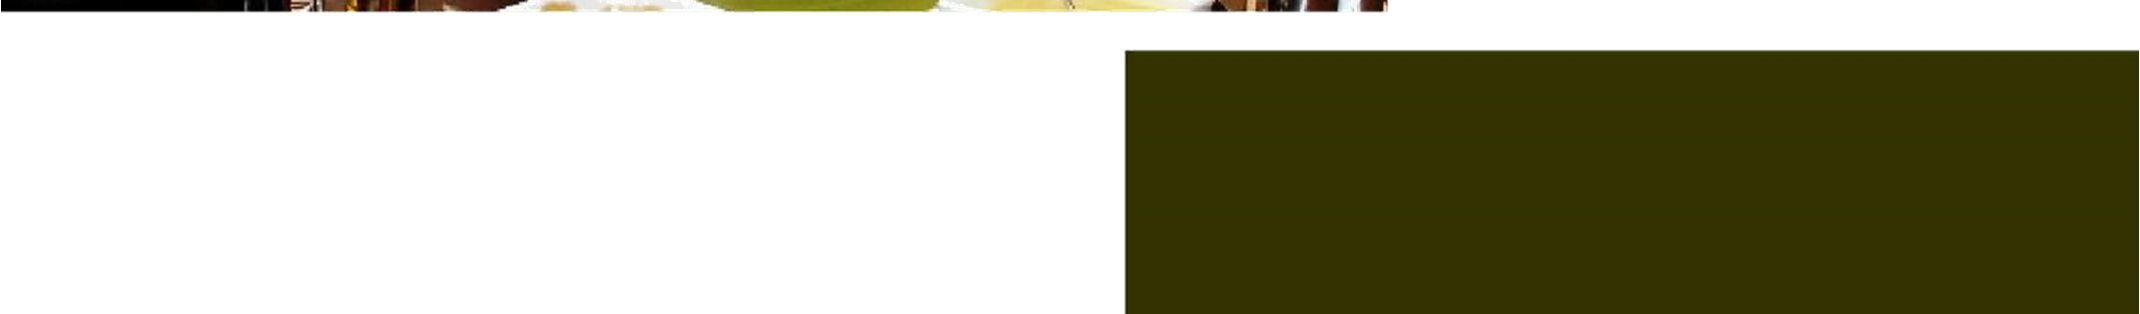 BUFFET ALECRIM - SUGESTÃO 3 R$ 130,00 por pessoa Cesta de pães da casa (focaccia, lavash e mini integral) e manteiga Mix de folhas verdes Salada de agrião com pêra assada ao molho de iogurte e limão